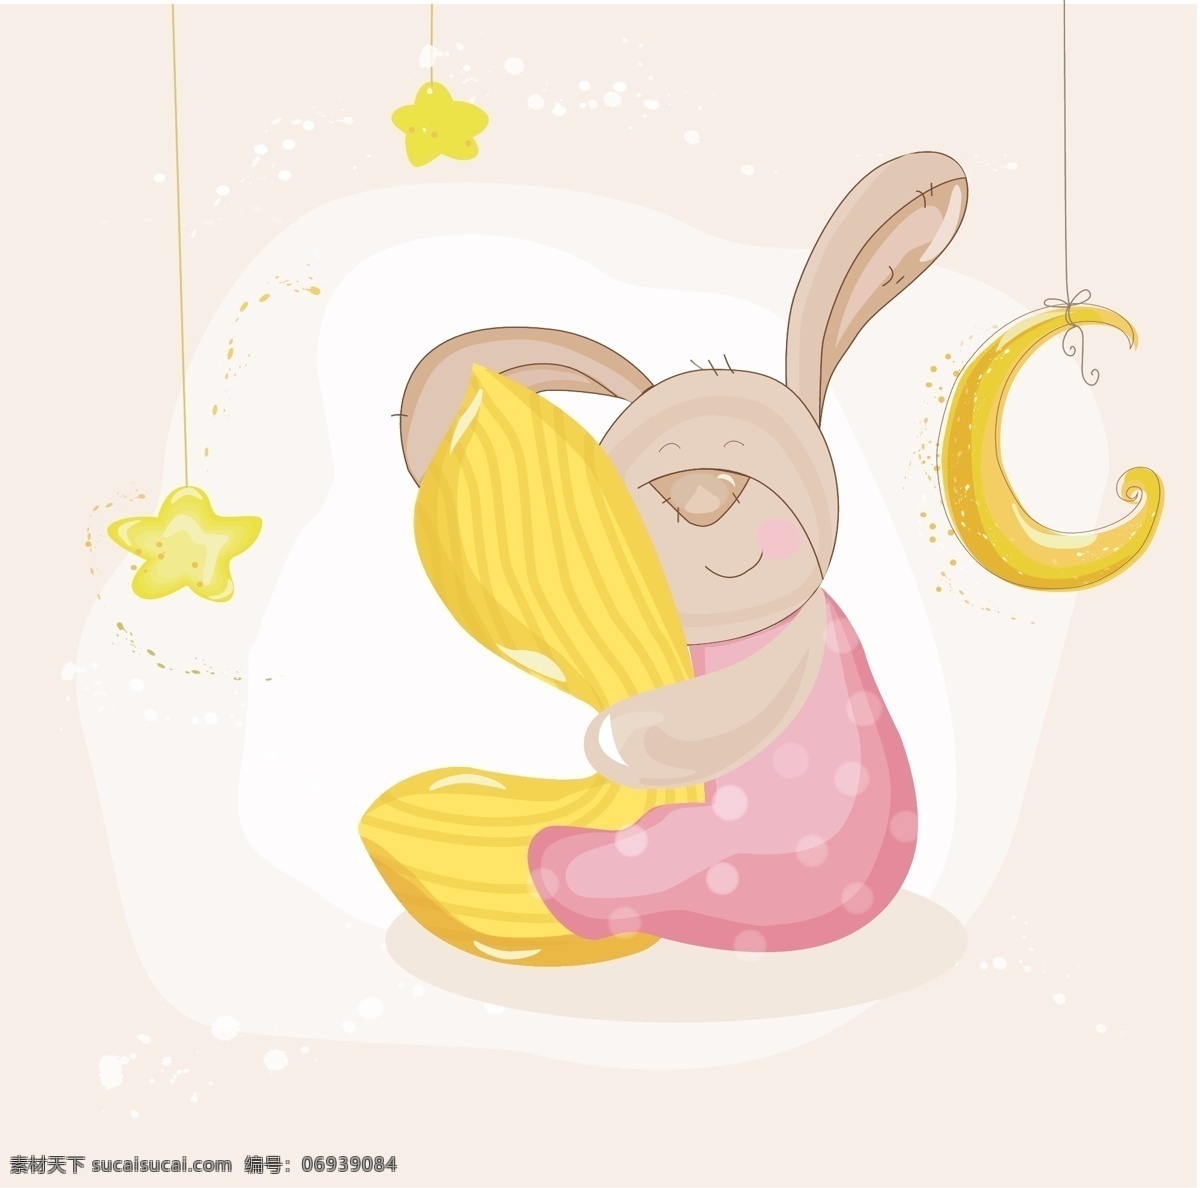 可爱小兔图片 可爱小兔 小兔抱枕 可爱背景 粉色小兔 卡通小兔 矢量图 卡通设计